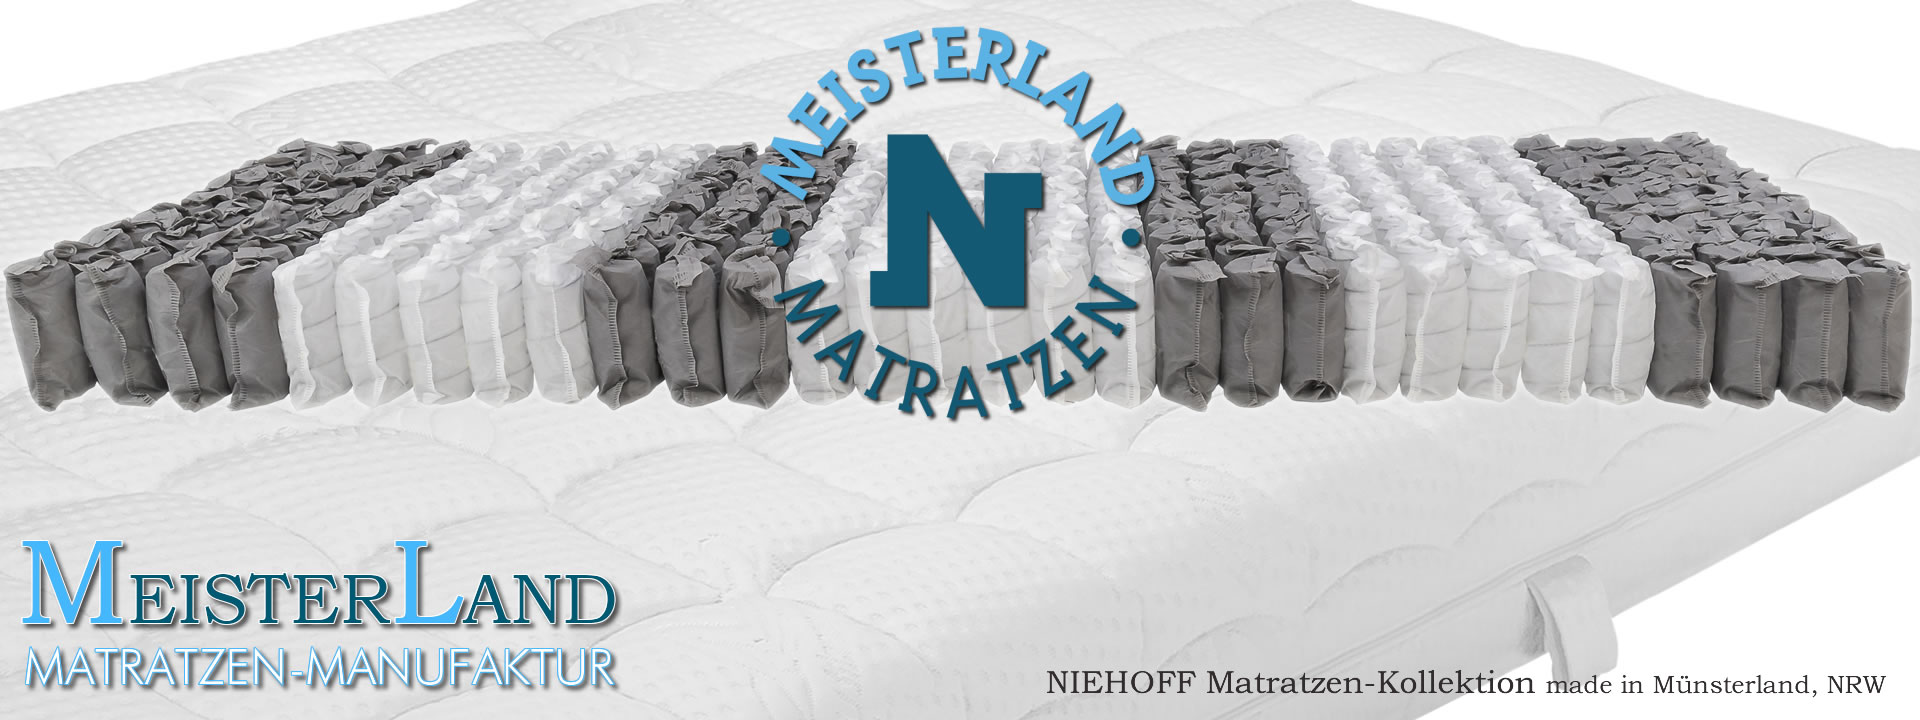 Tonnen-Taschenfederkern Matratzen exclusive Kollektion MeisterLand aus Münsterland, NRW Manufaktur FEY